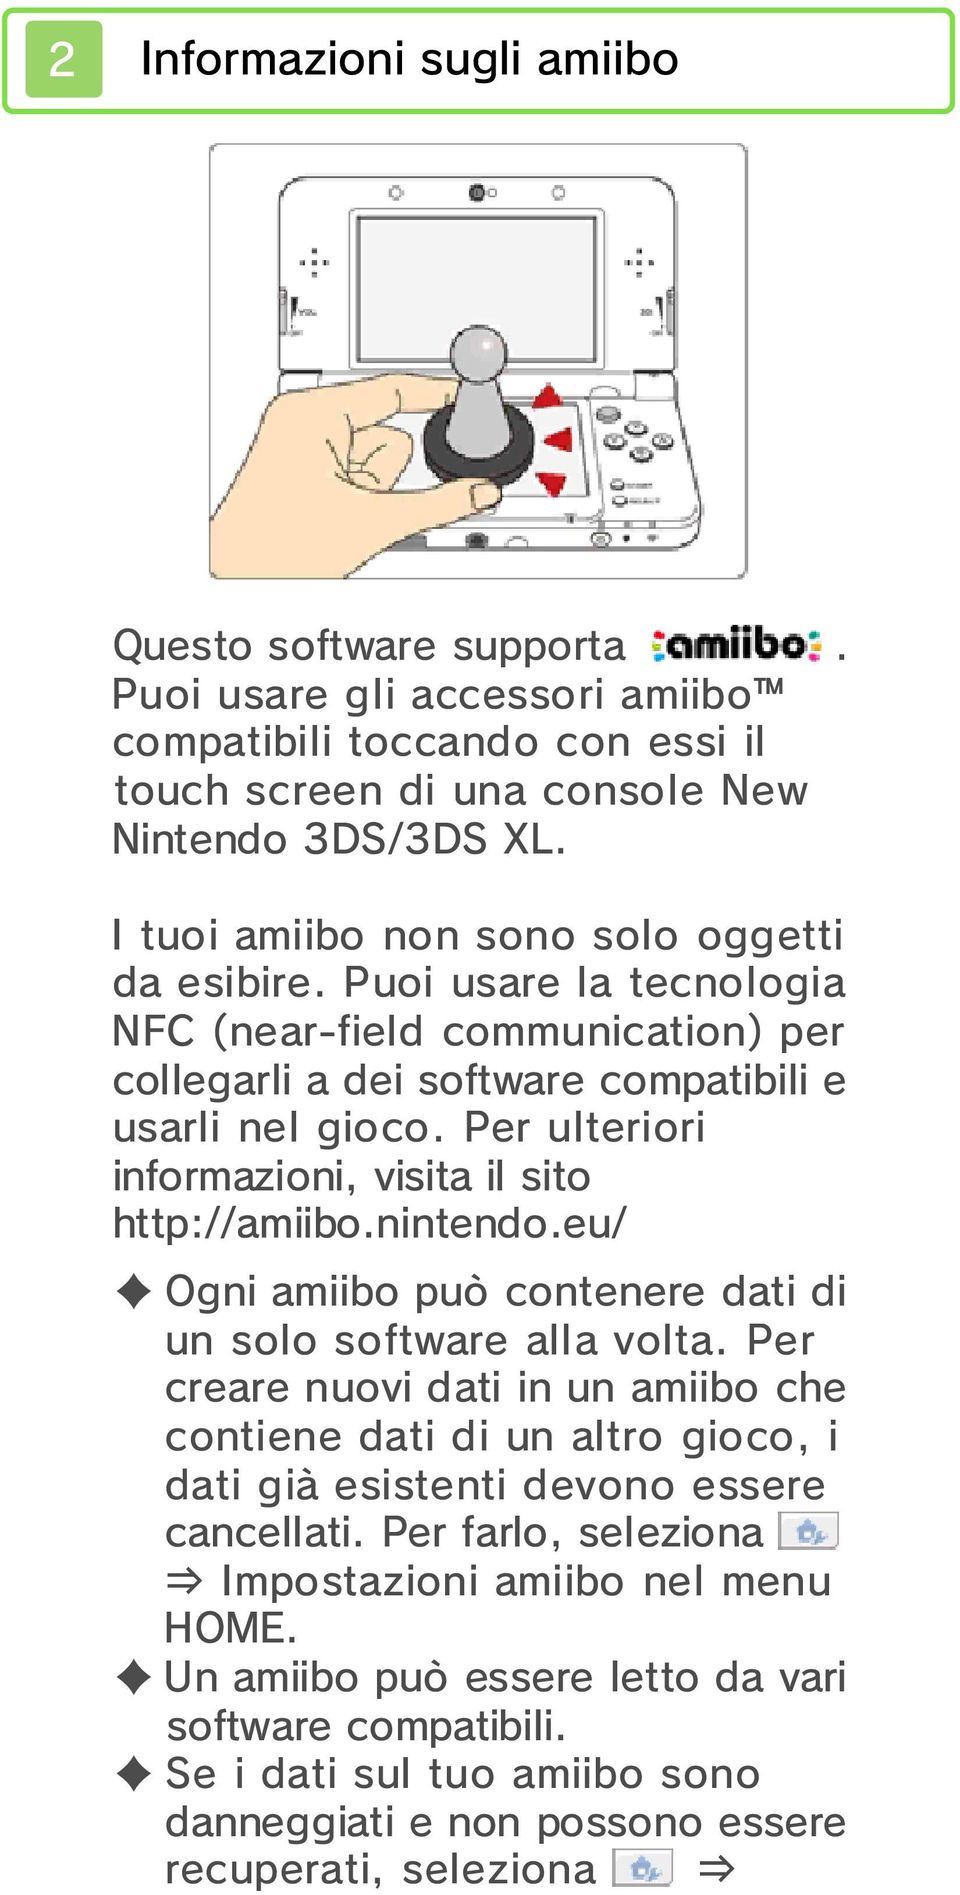 Per ulteriori informazioni, visita il sito http://amiibo.nintendo.eu/ Ogni amiibo può contenere dati di un solo software alla volta.